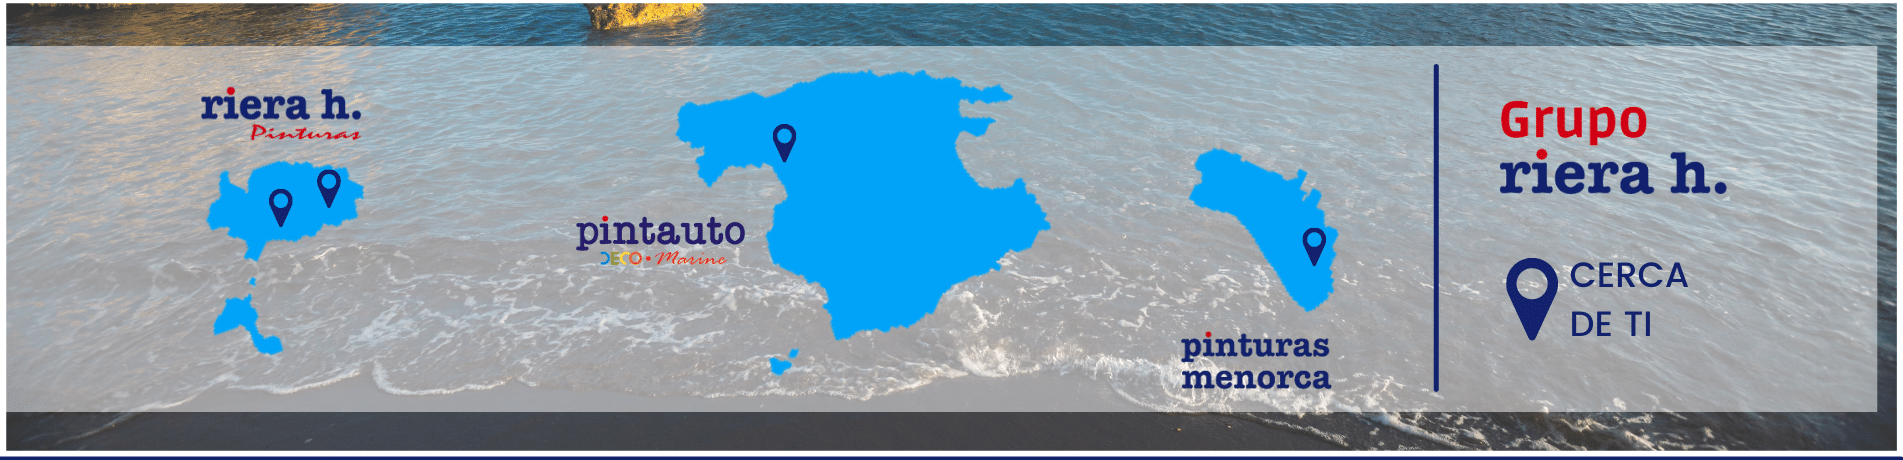 Solo enviamos a las Islas Baleares. La Península Ibérica bajo petición